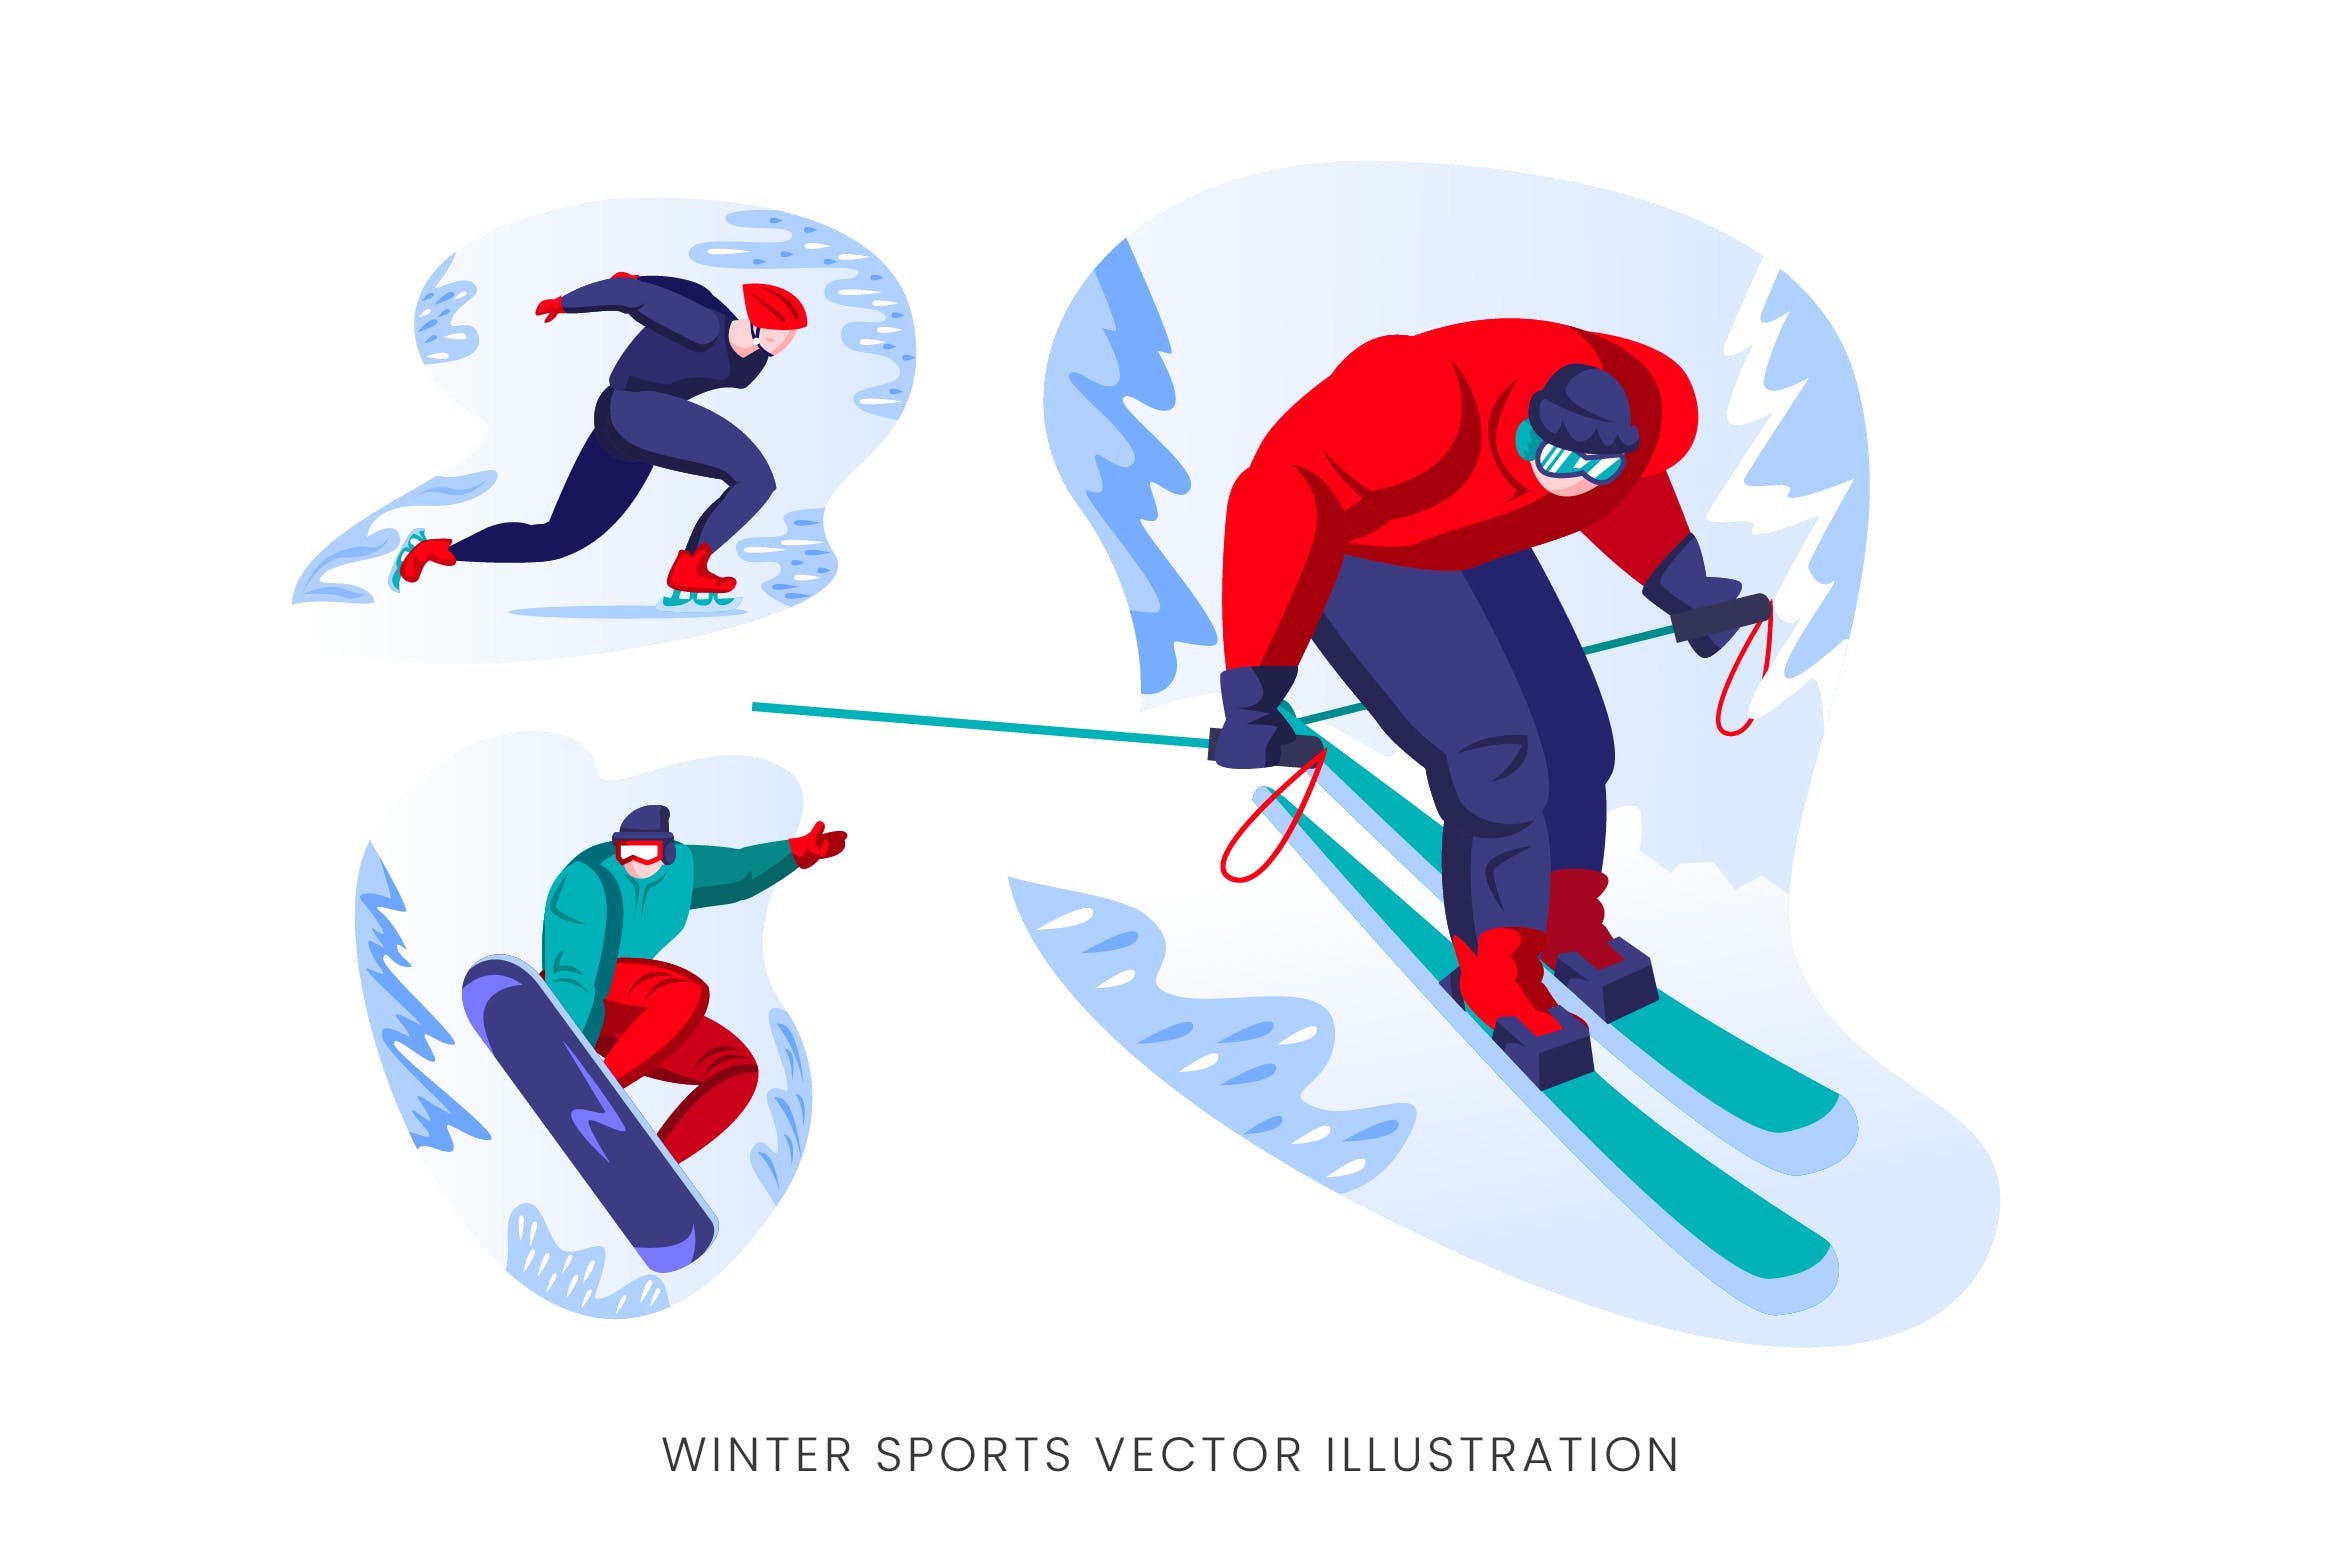 冬季运动员人物形象矢量设计手绘素材 Winter Sport Vector Character Set插图